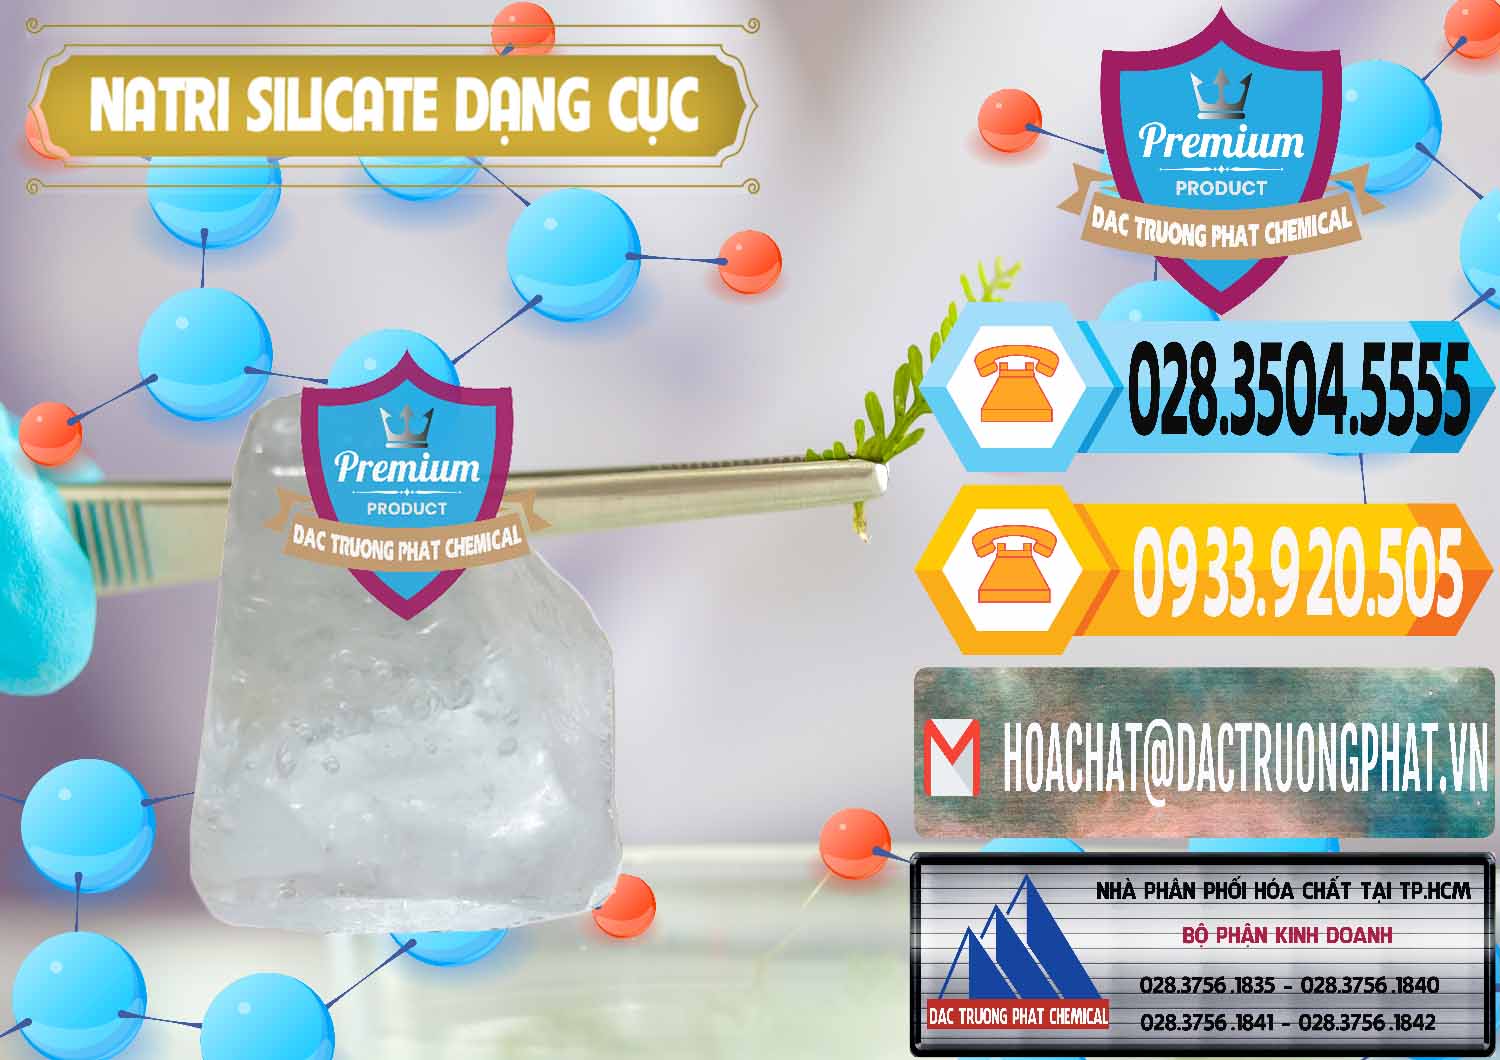 Bán - cung cấp Natri Silicate - Na2SiO3 - Keo Silicate Dạng Cục Ấn Độ India - 0382 - Công ty cung cấp - phân phối hóa chất tại TP.HCM - hoachattayrua.net